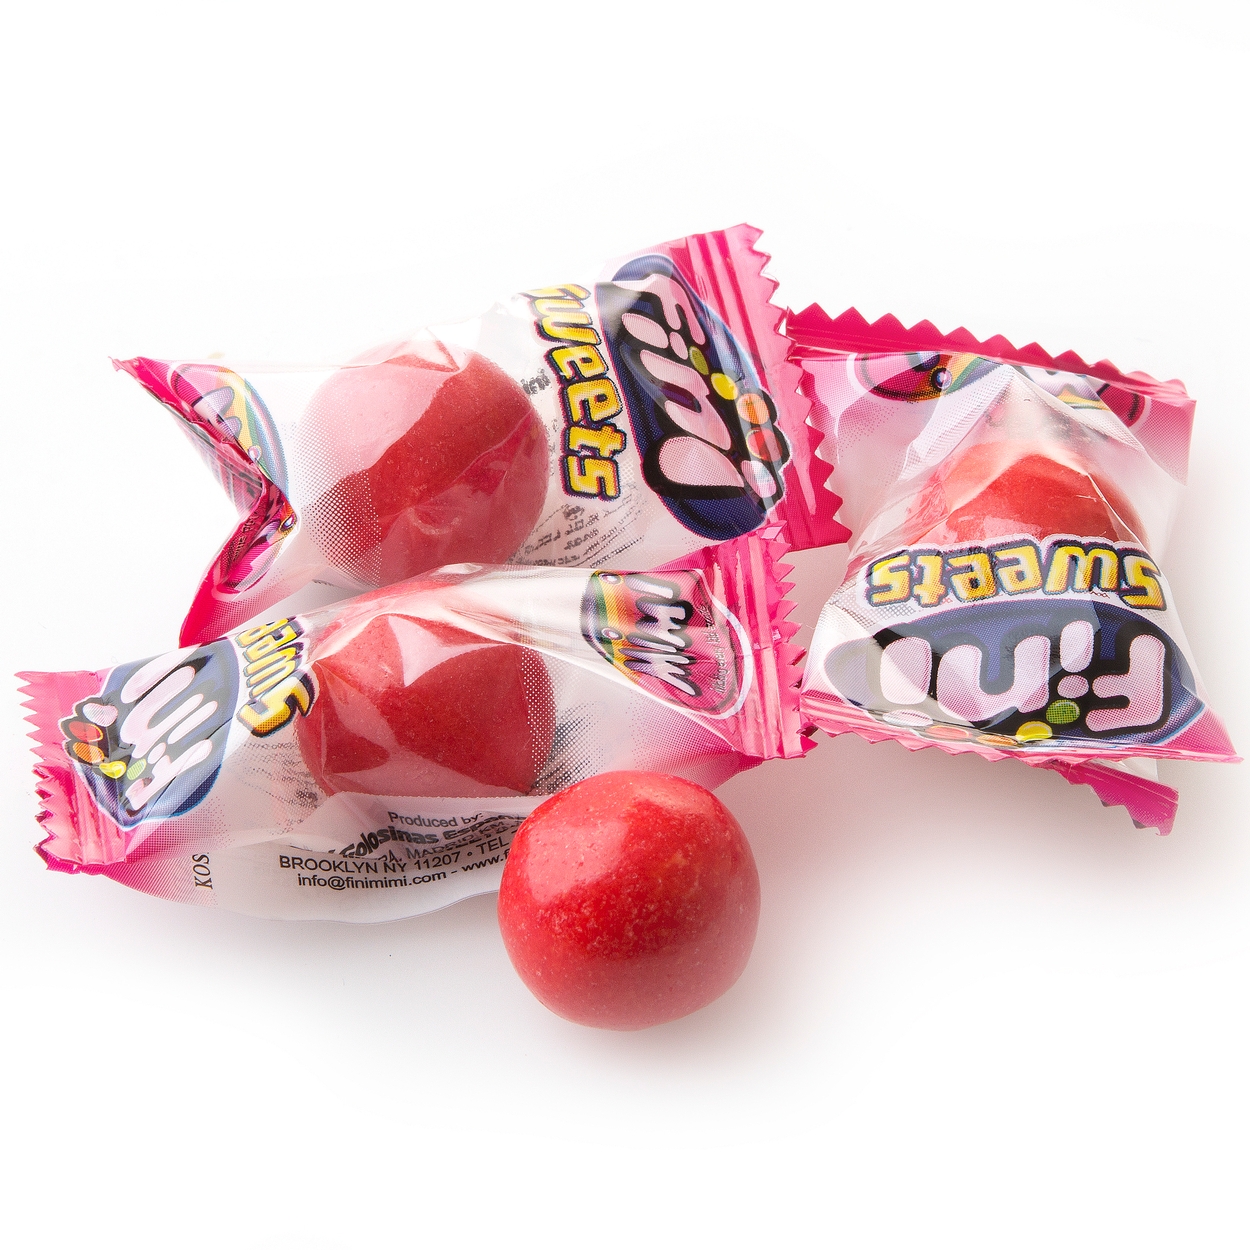 Bonbons Fini Chewing Gum Melon Bubble Gum Melon